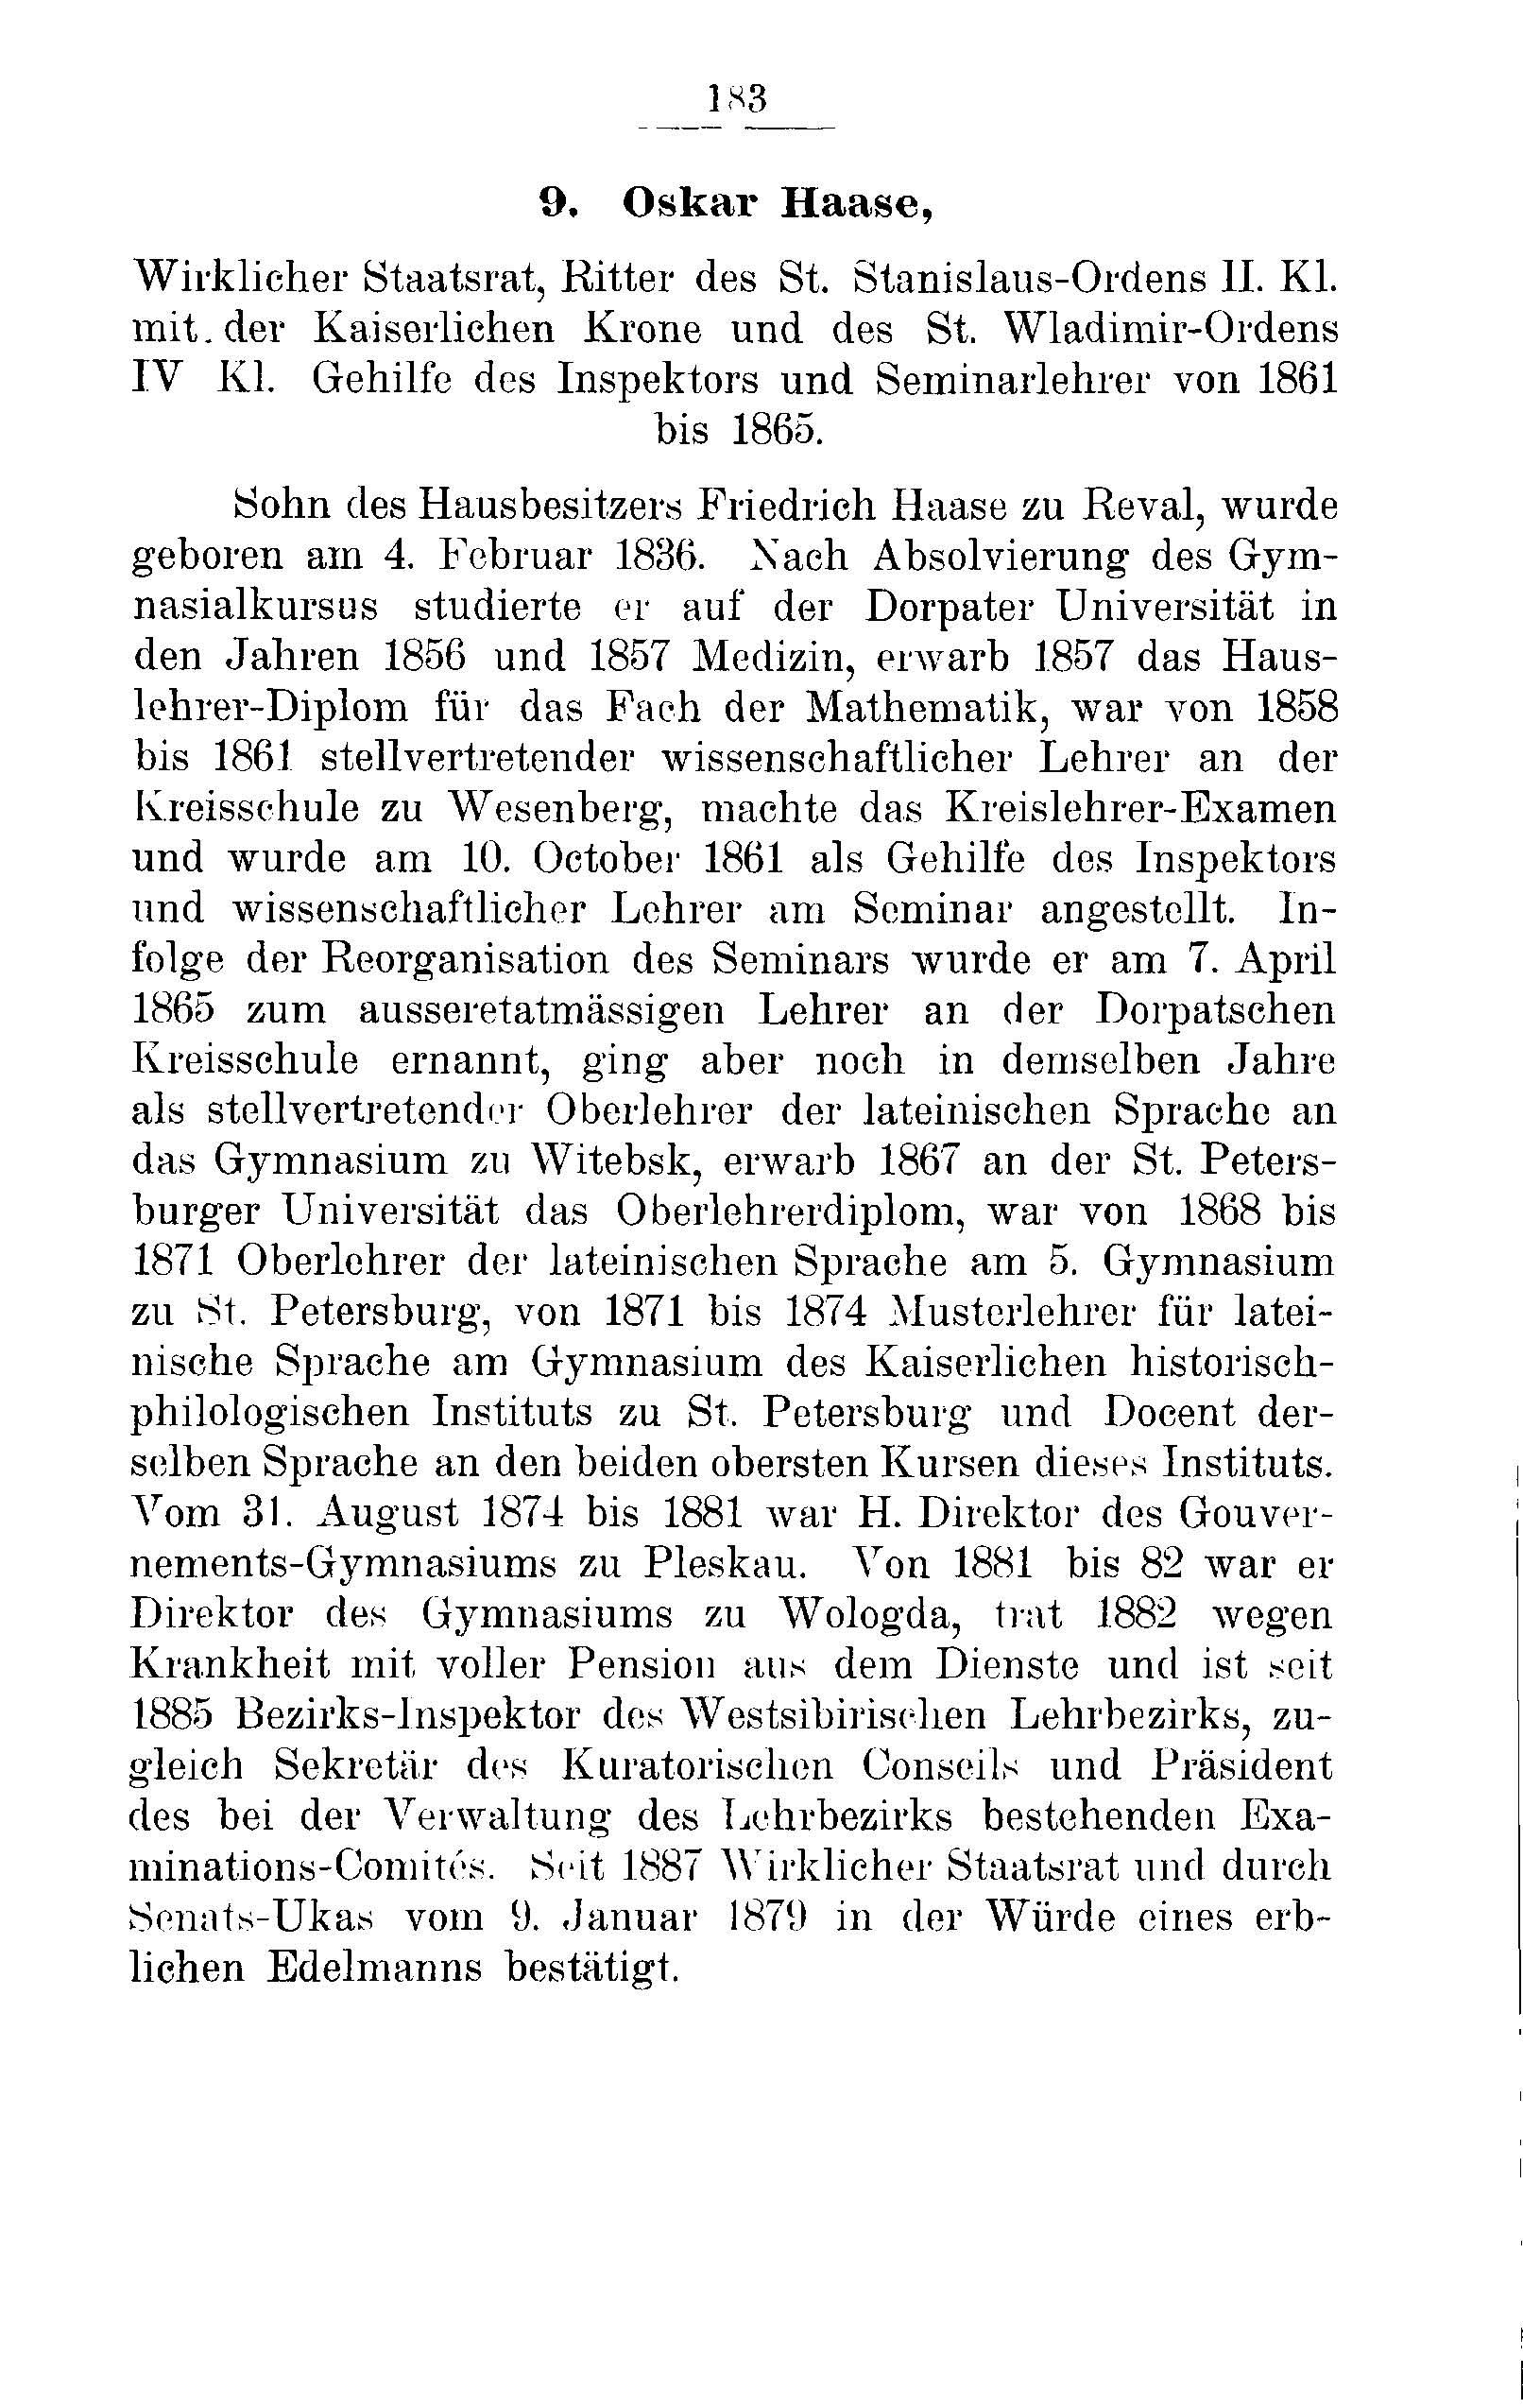 Das Erste Dorpatsche Lehrer-Seminar (1890) | 188. Põhitekst